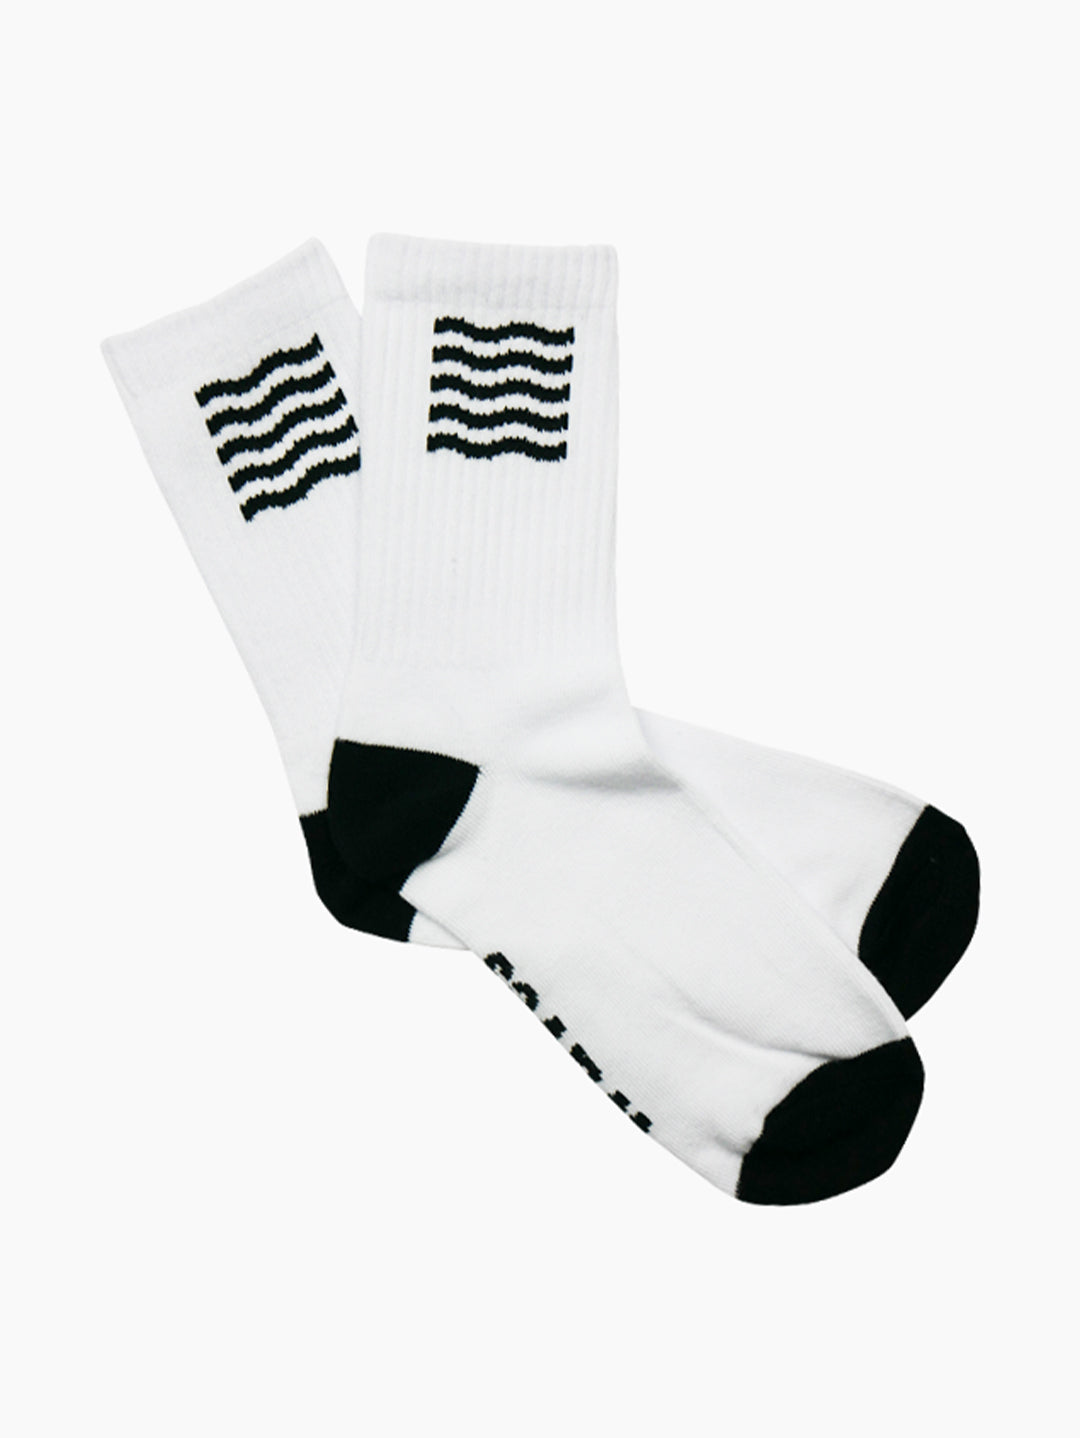 Unisex Active Socks (Black/White)